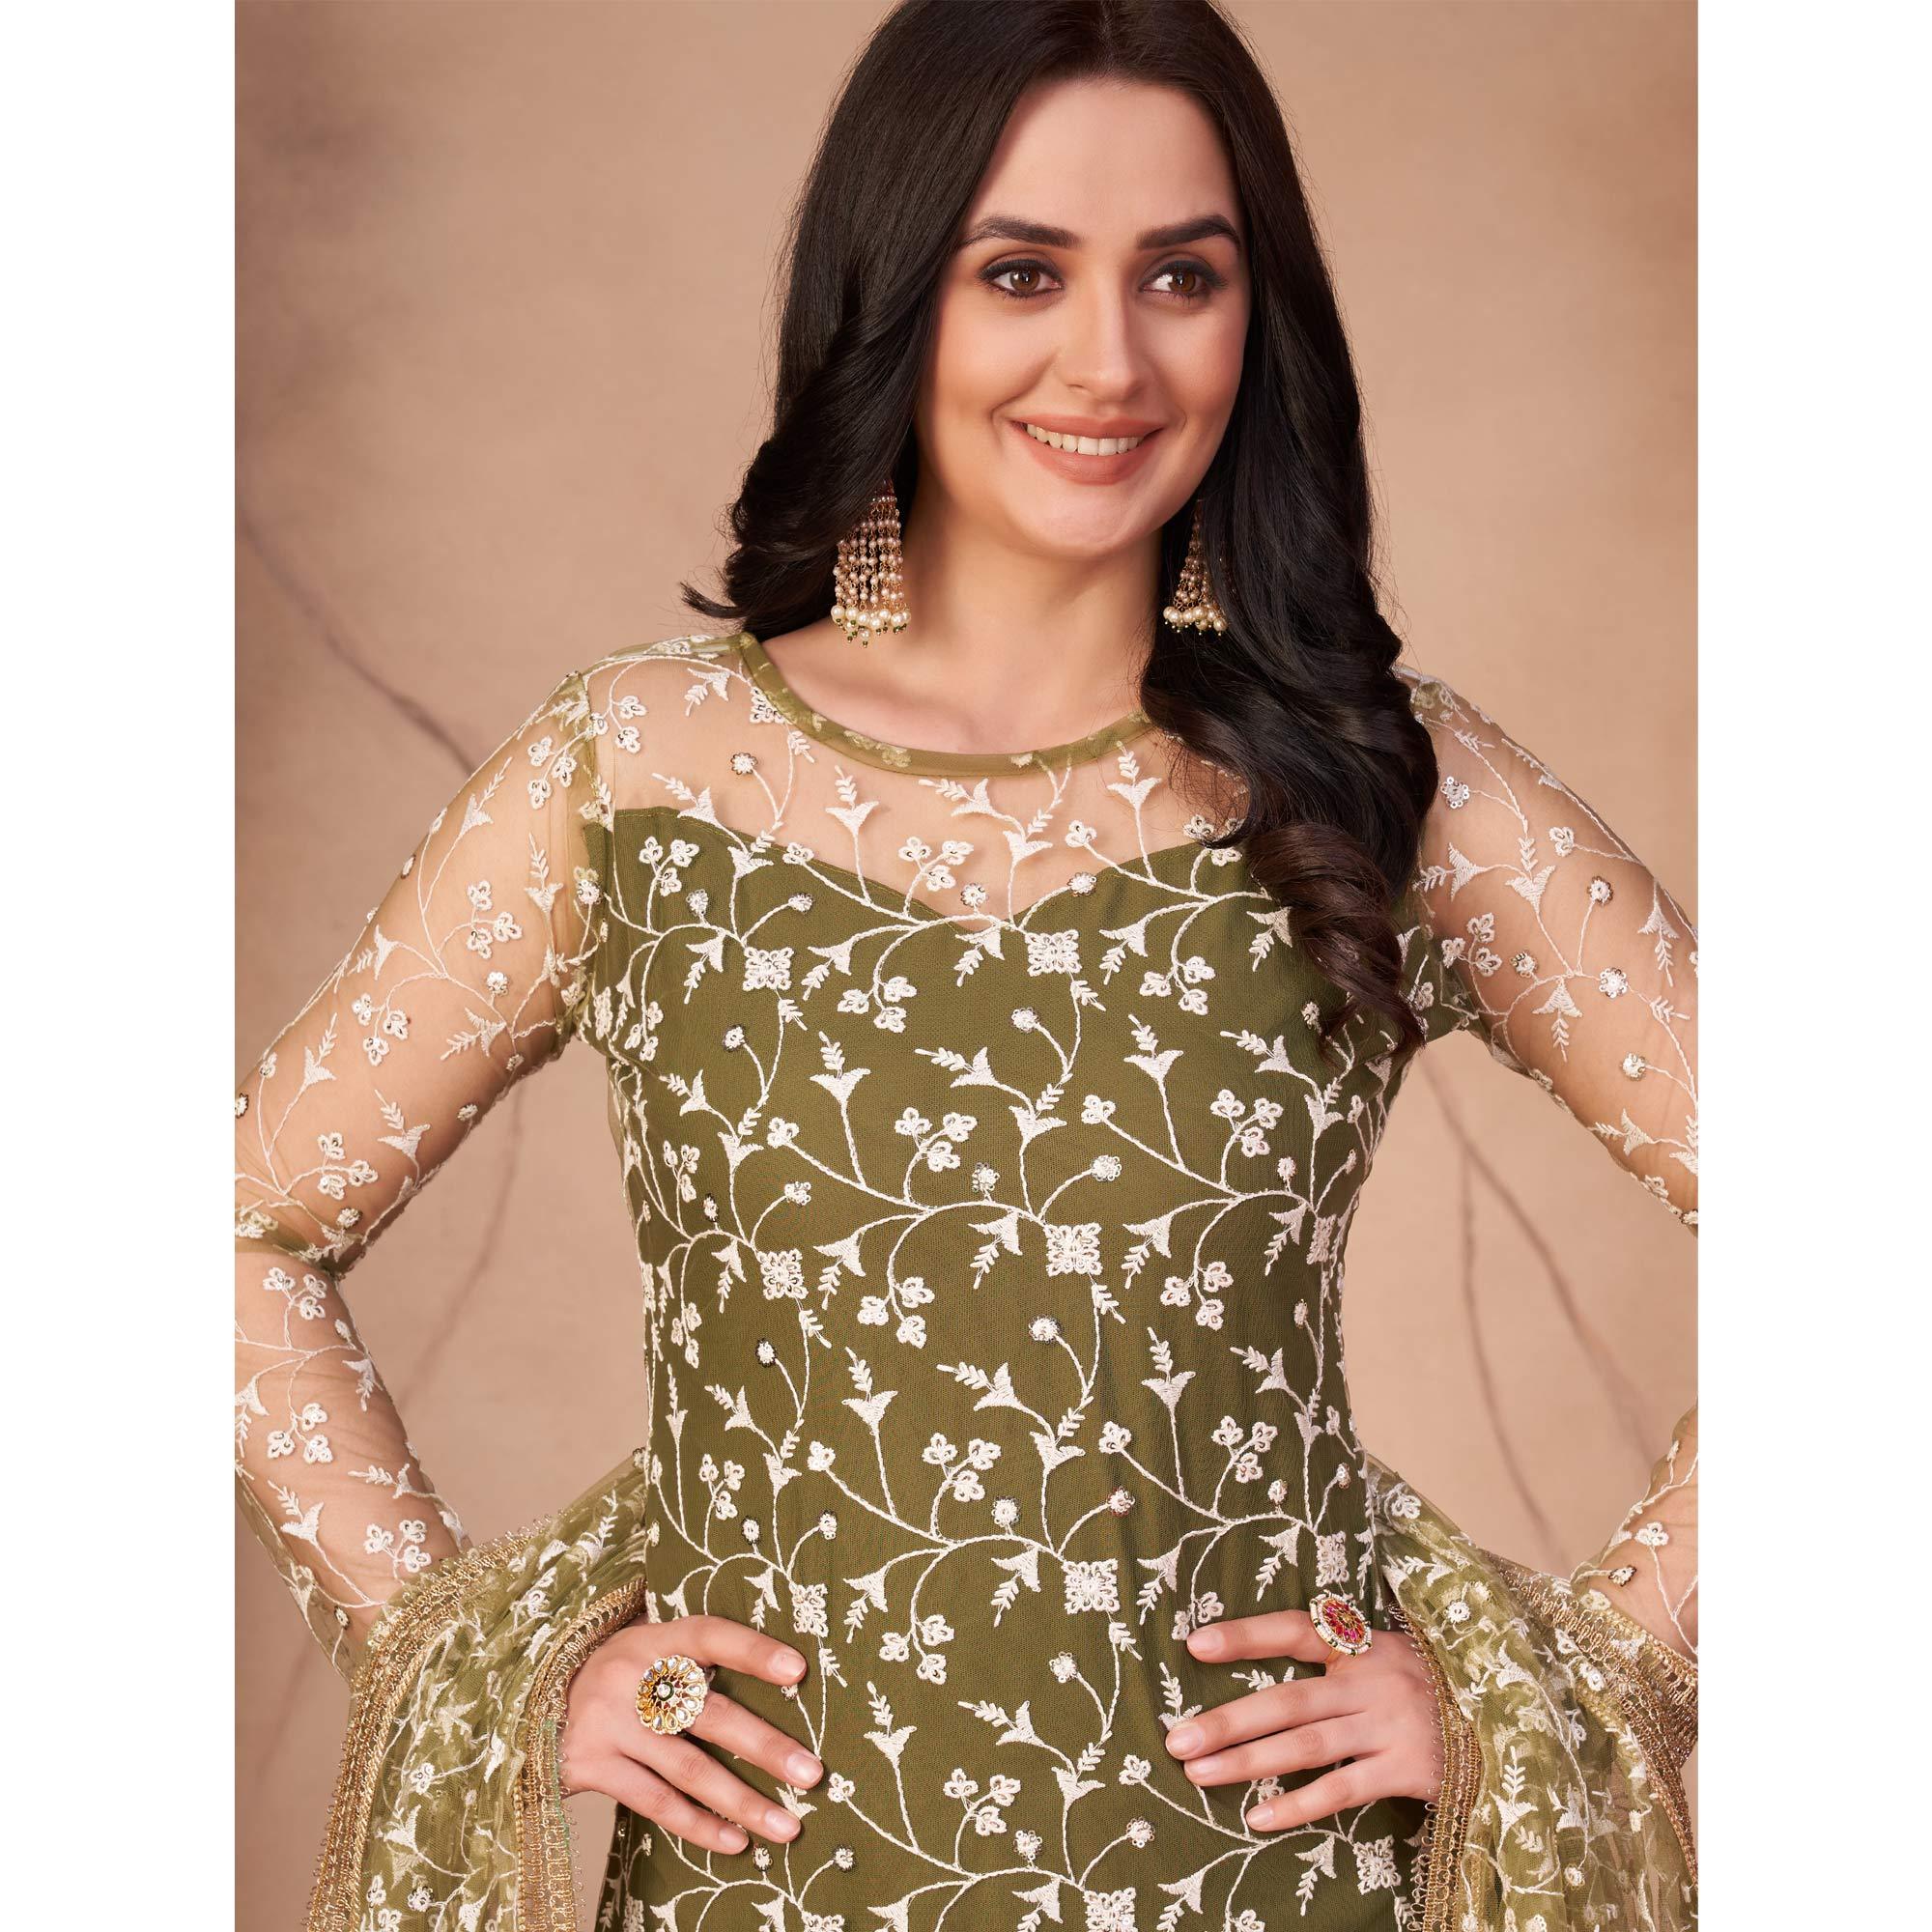 Net Dresses Frocks Gown, Shirt Shalwar Kameez Designs ,net dress designs  for girls | Net dress design, Net dress, Velvet dress designs